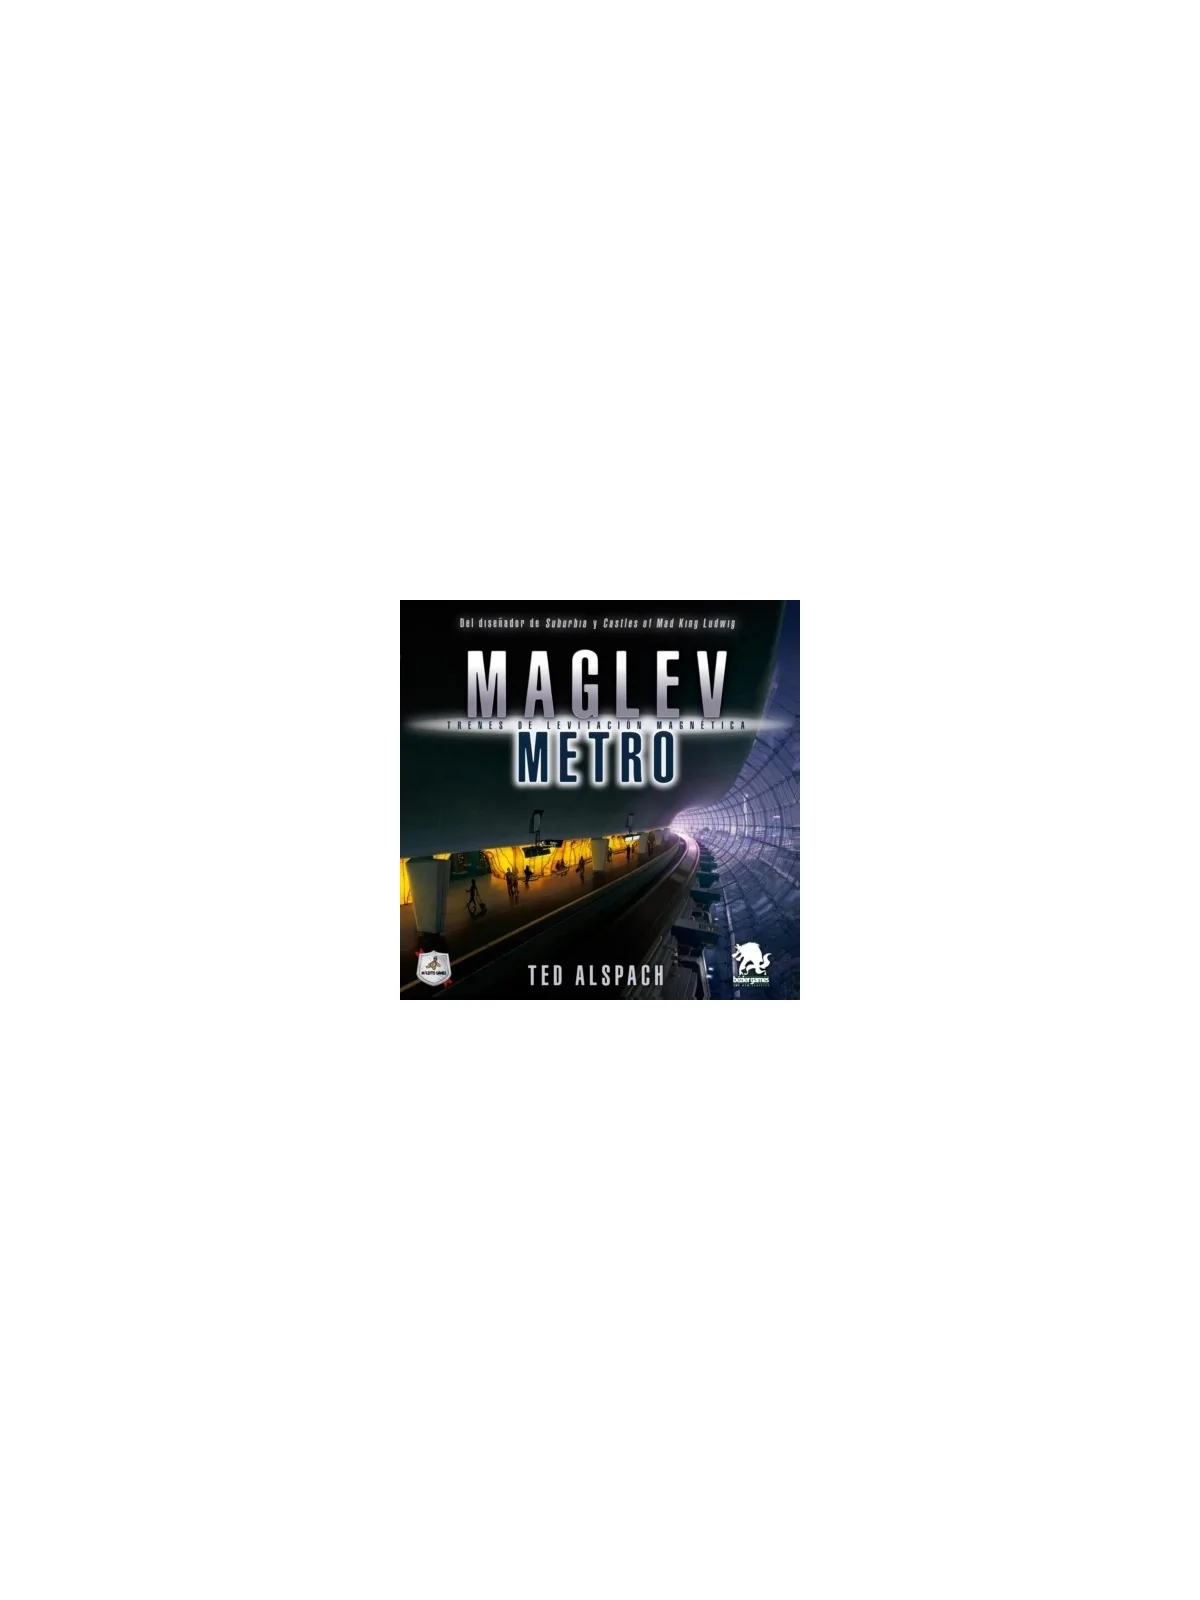 Comprar Maglev Metro barato al mejor precio 67,50 € de Maldito Games